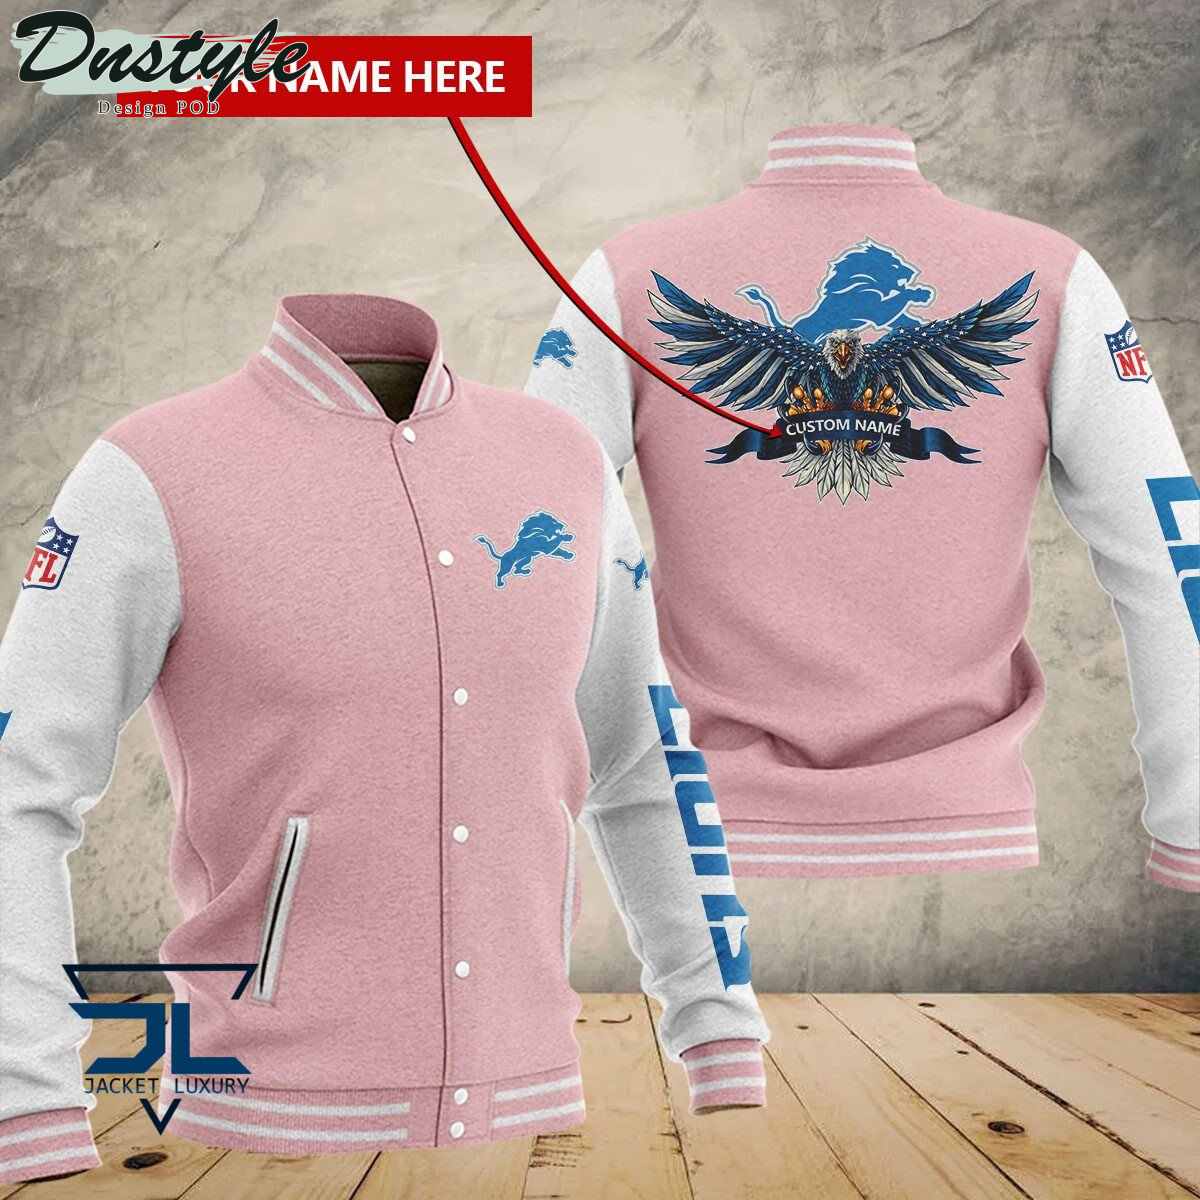 Detroit Lions Eagles Custom Name Baseball Jacket